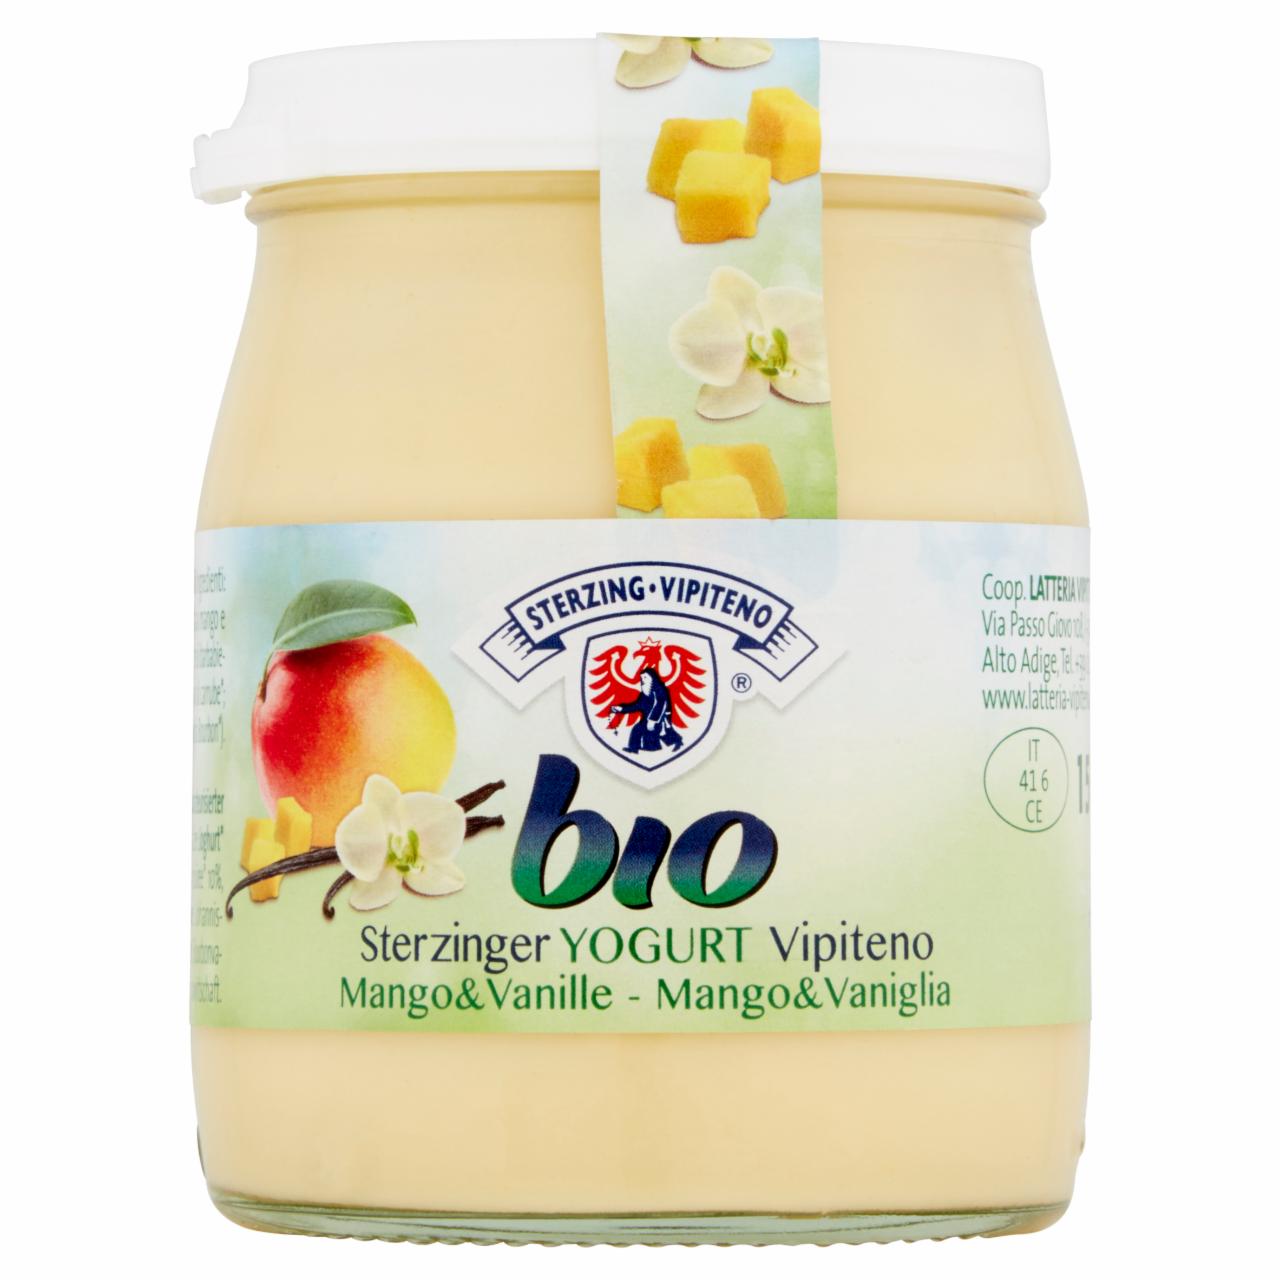 Zdjęcia - Sterzing Vipiteno Bio Jogurt mango wanilia 150 g